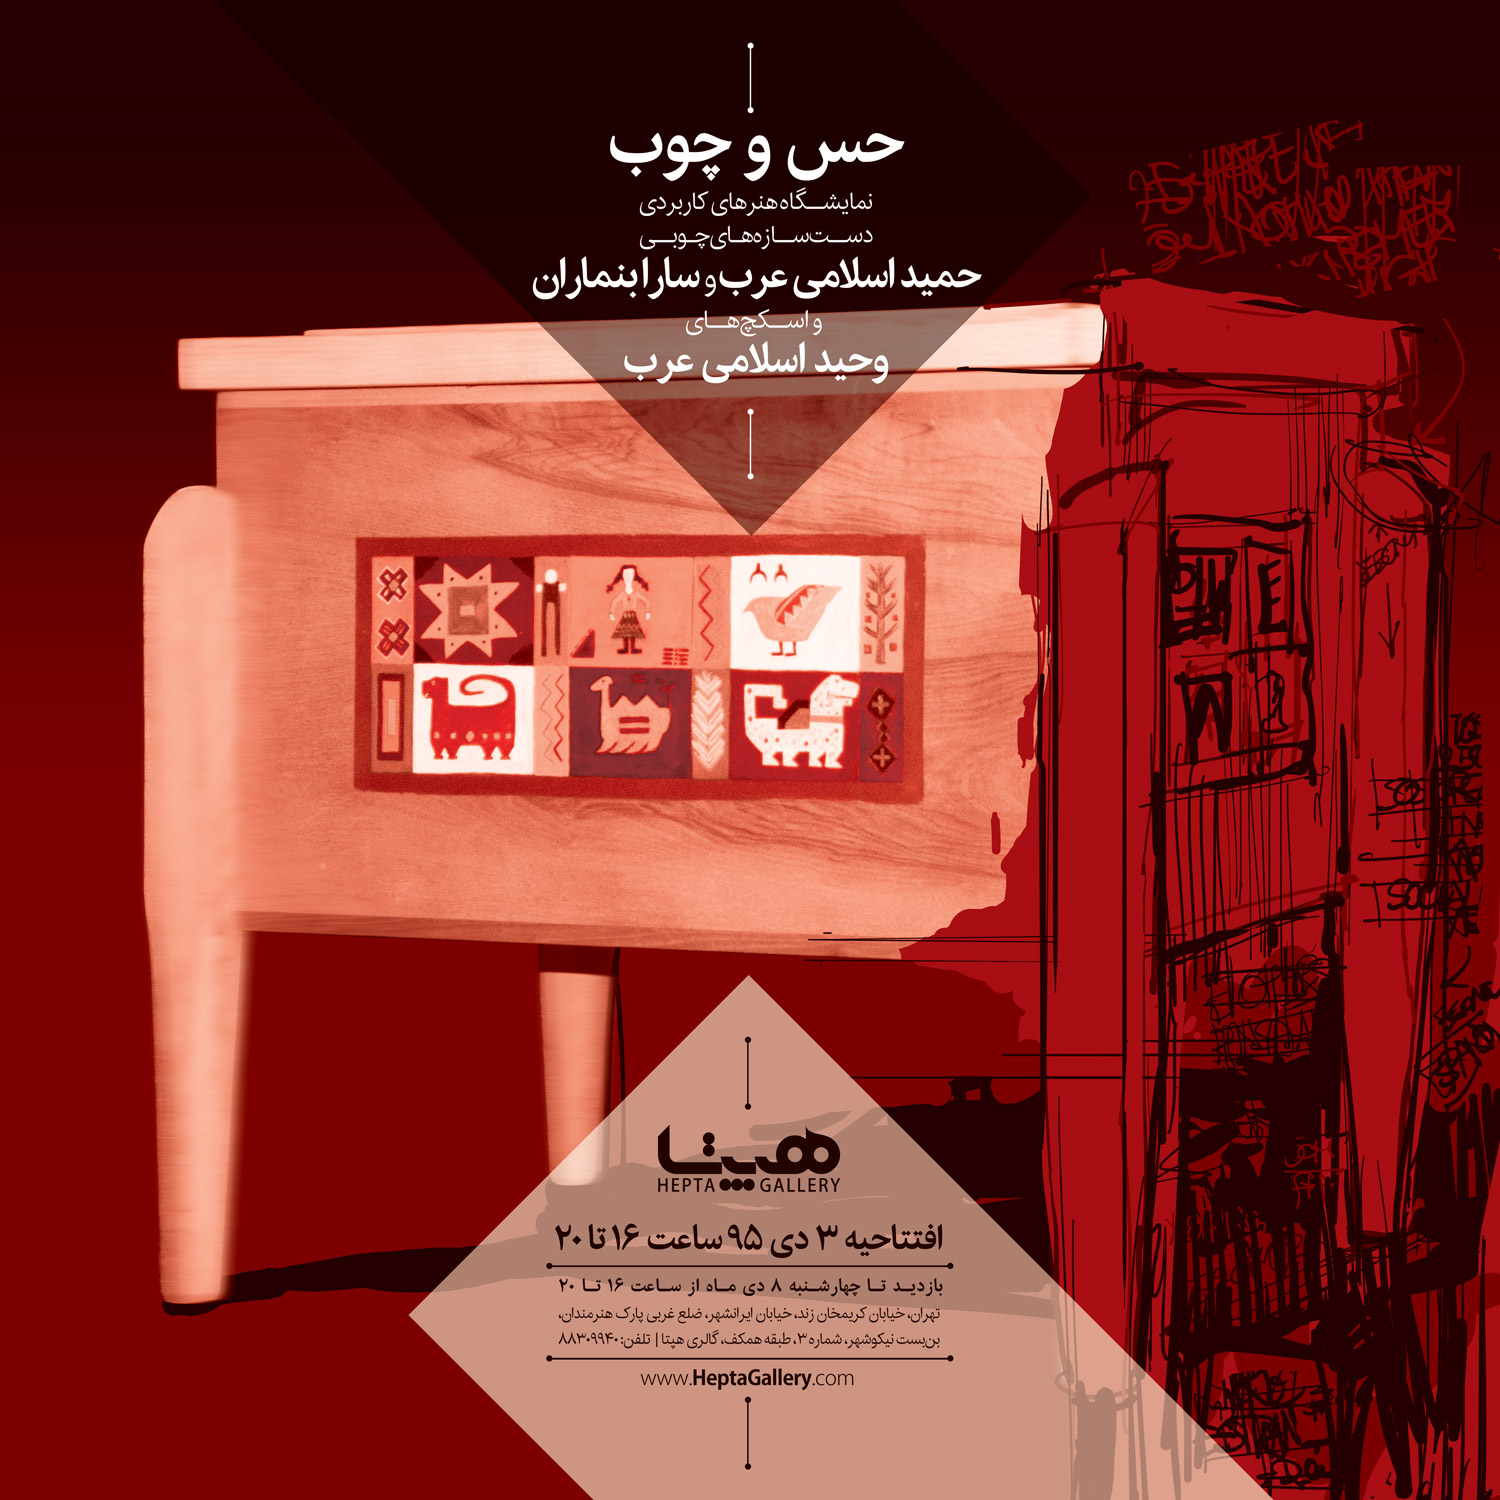 نمایشگاه هنرهای کاربردی حمید اسلامی عرب و سارا بنماران و اسکچ های وحید اسلامی عرب با عنوان